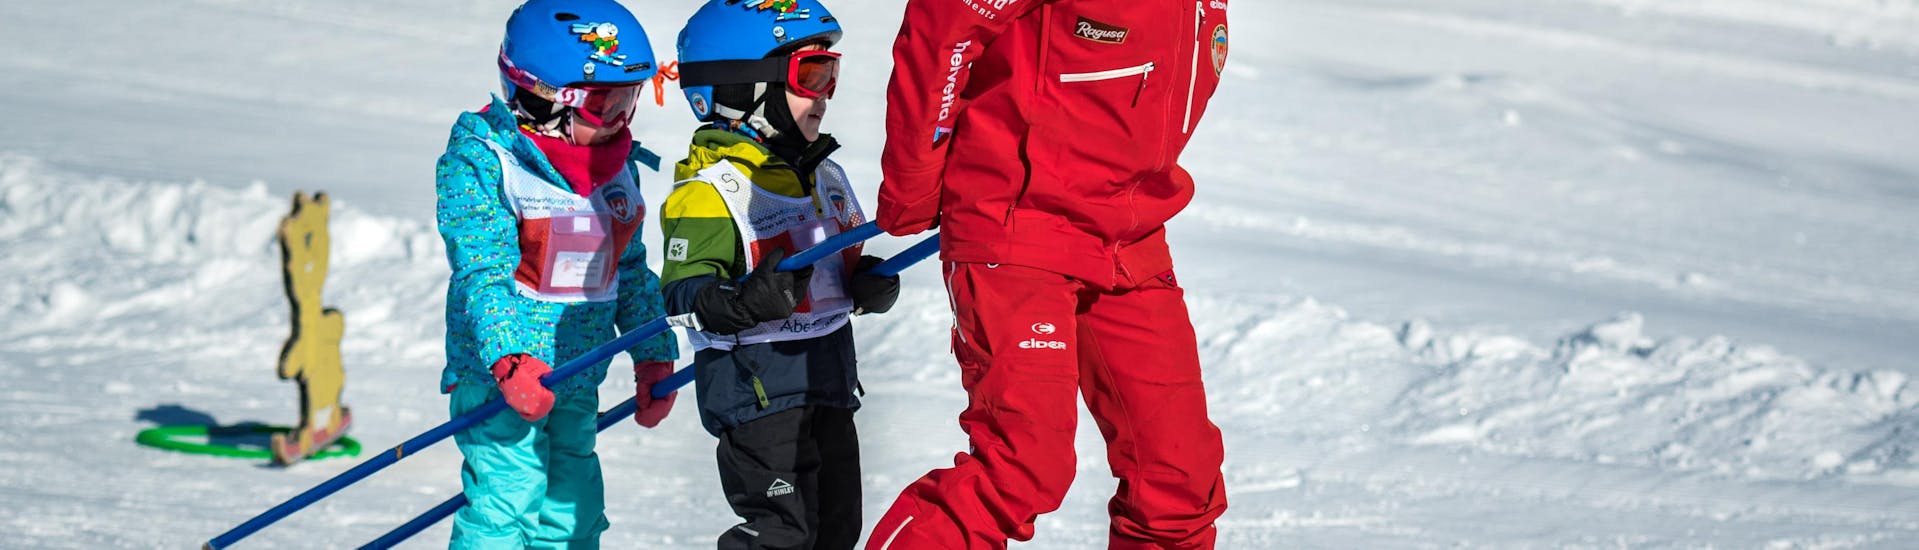 Een skileraar van de Zwitserse skischool Grindelwald trekt twee kleine kinderen achter zich aan tijdens een privé kinderskiles voor alle niveaus.